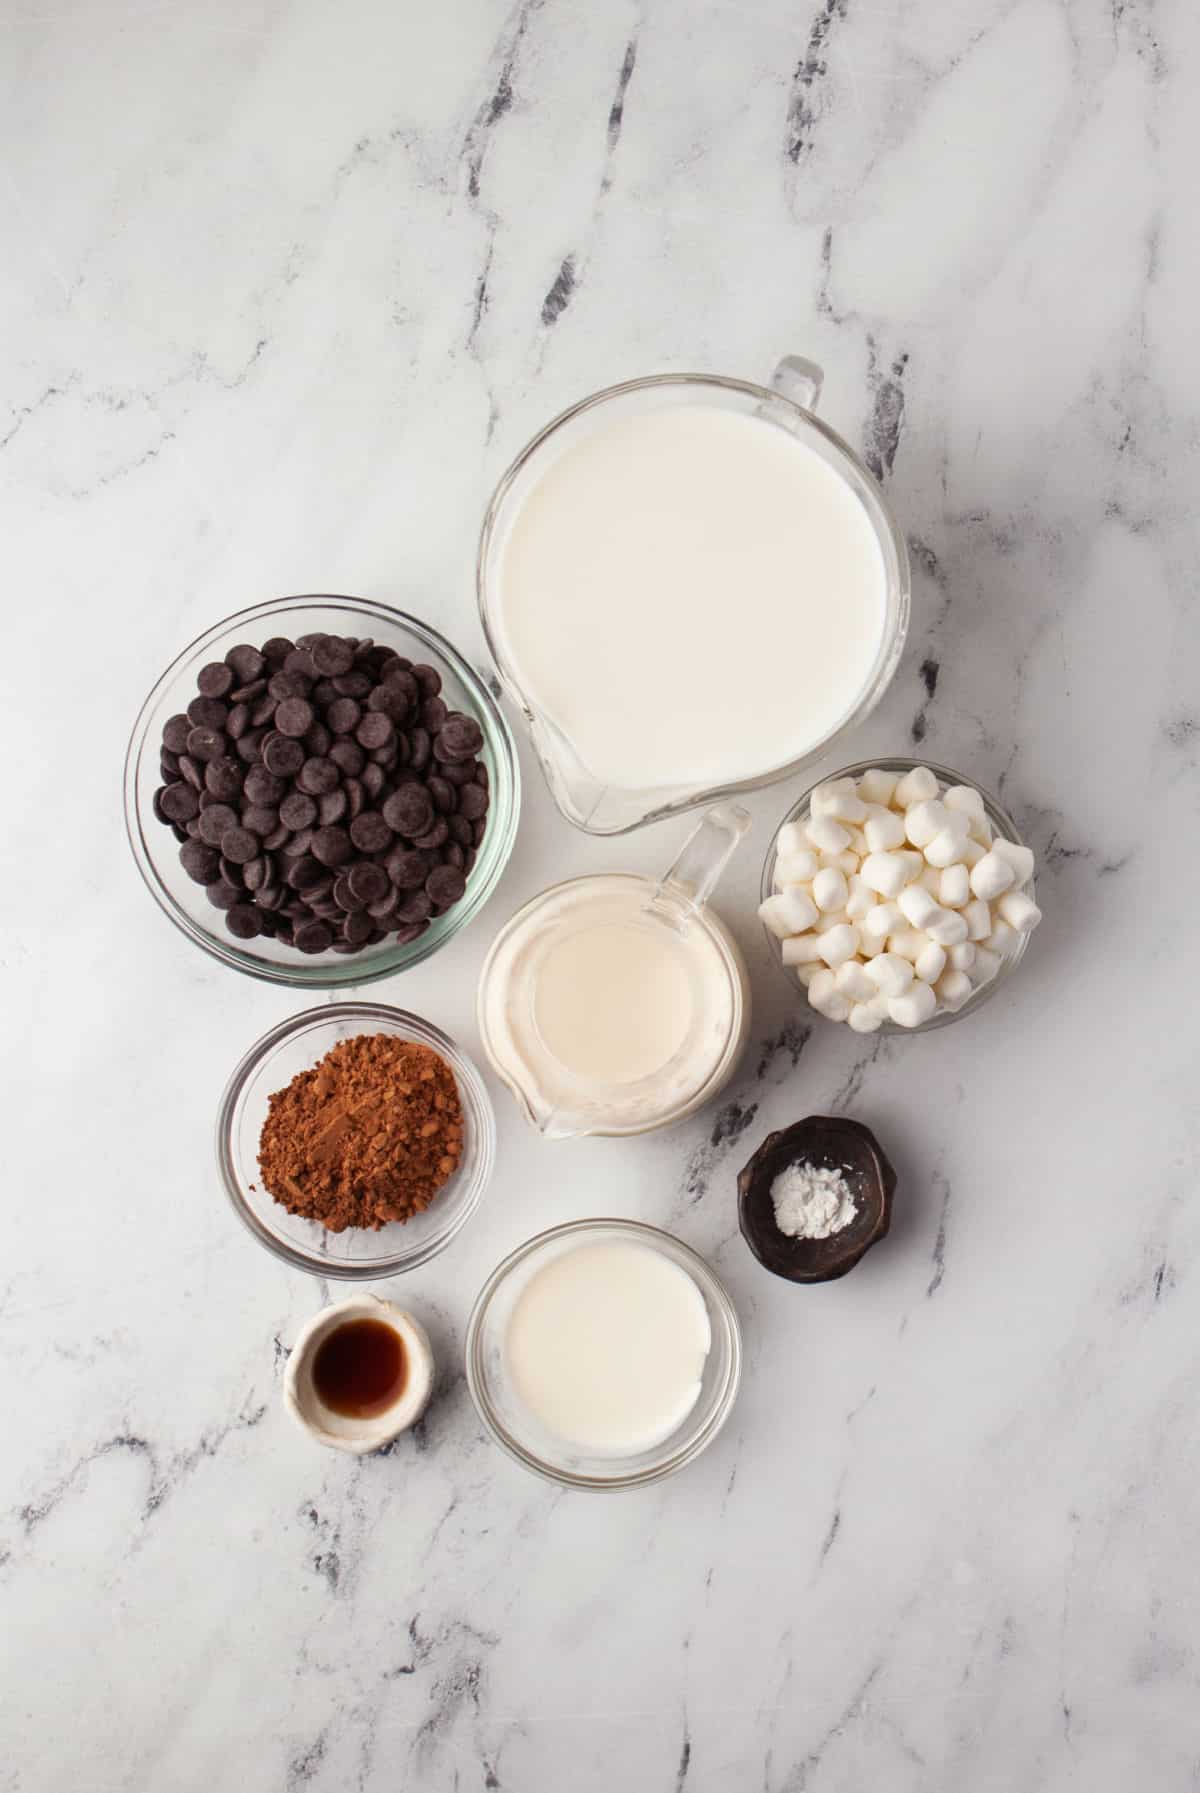 Ingredients to make crock pot hot chocolate. 